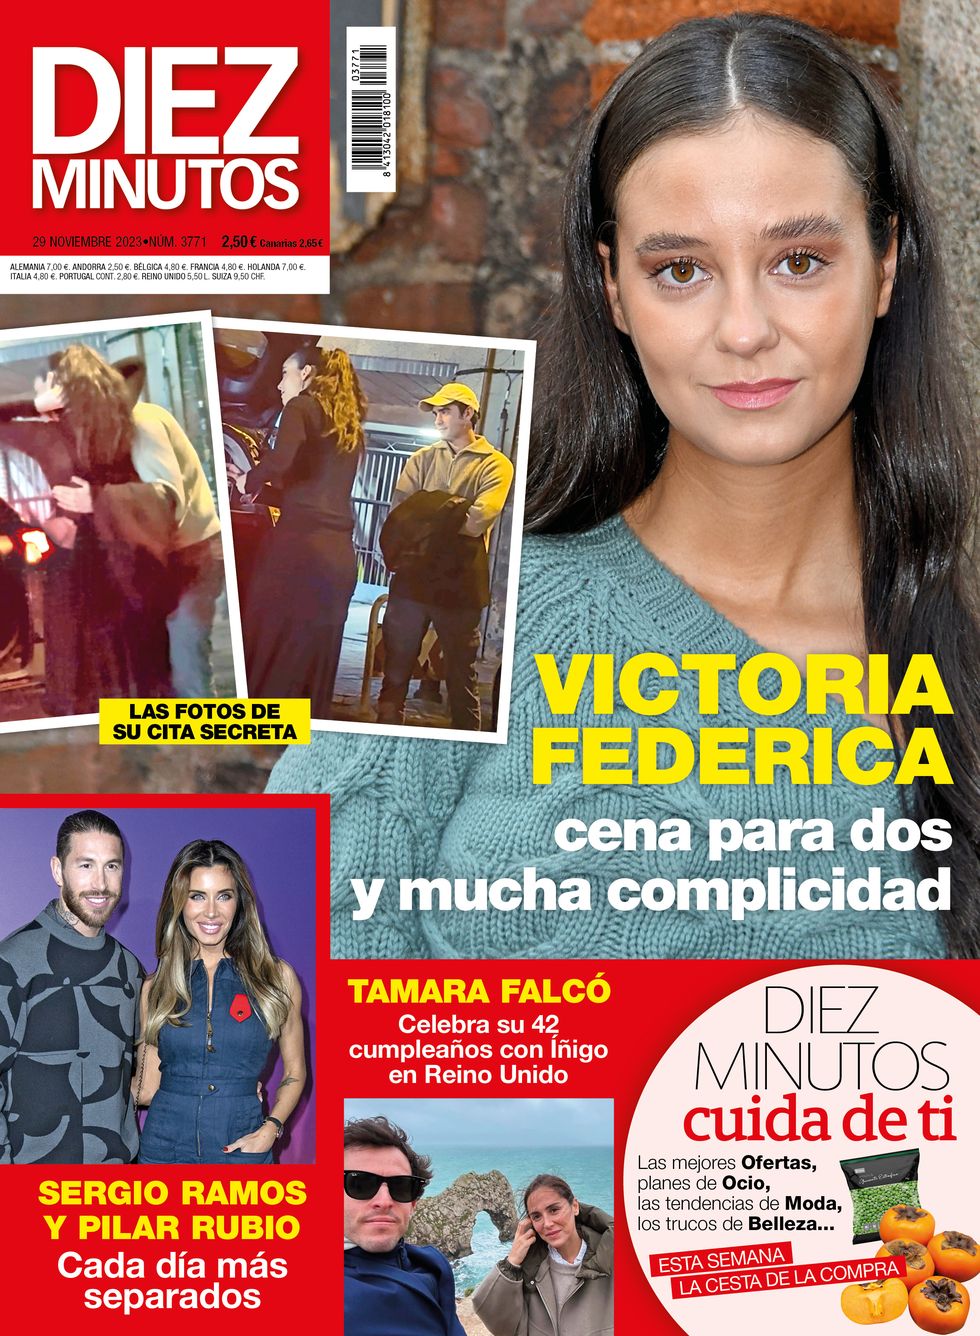 portada de la revista diez minutos, numero 3771, con victoria federica y su cita por madrid con un acompanante